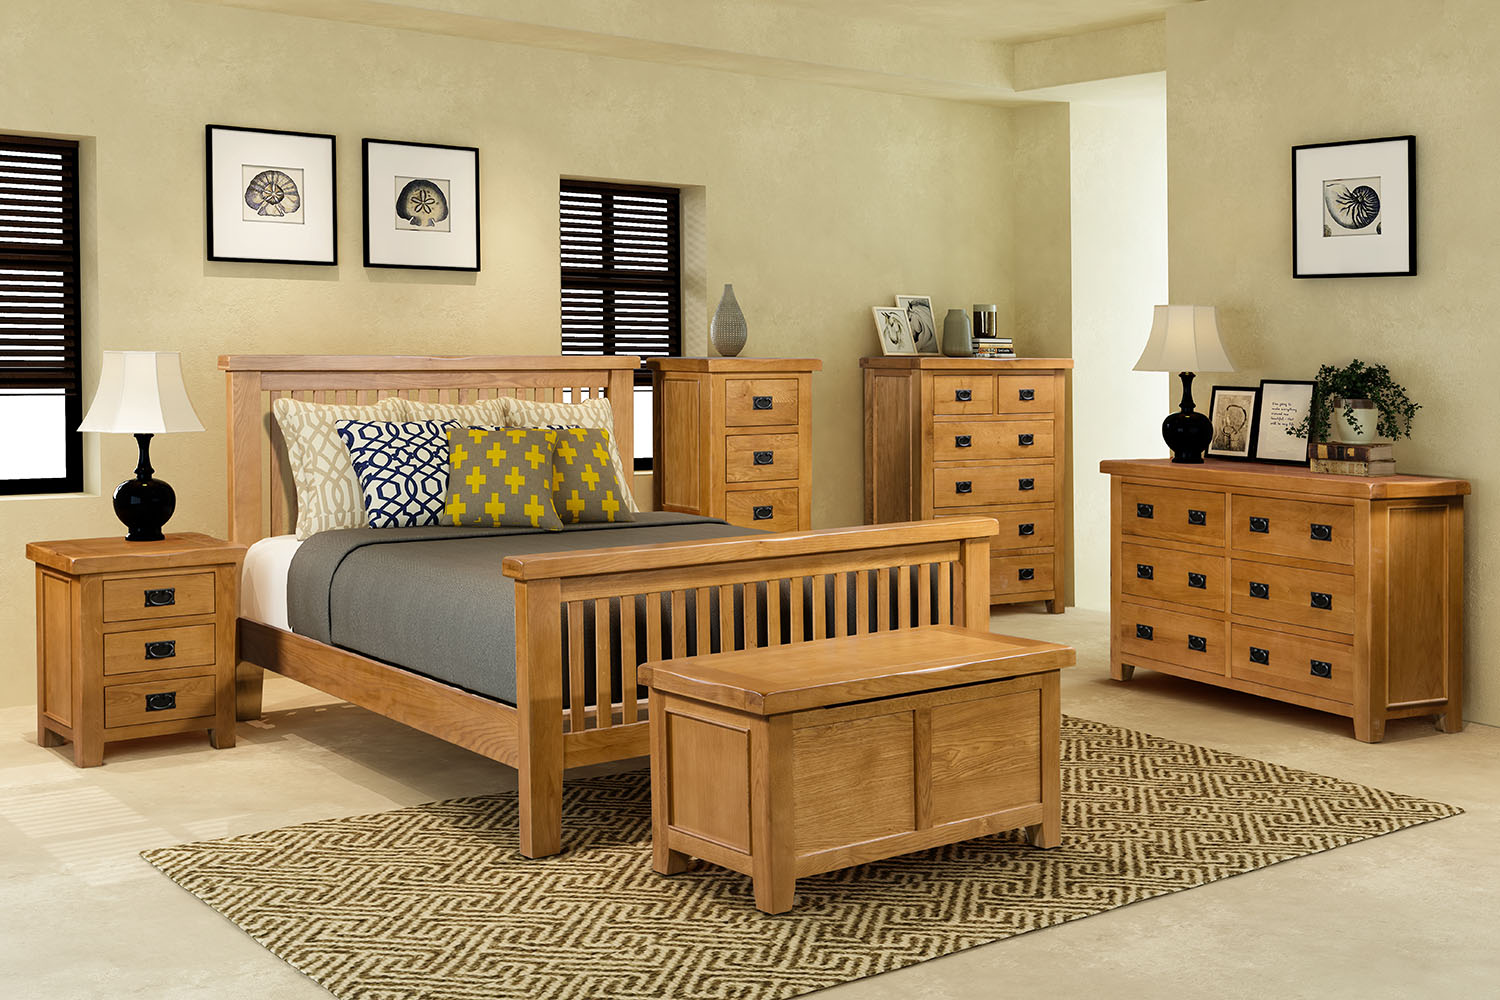 oak bedroom furniture sydney